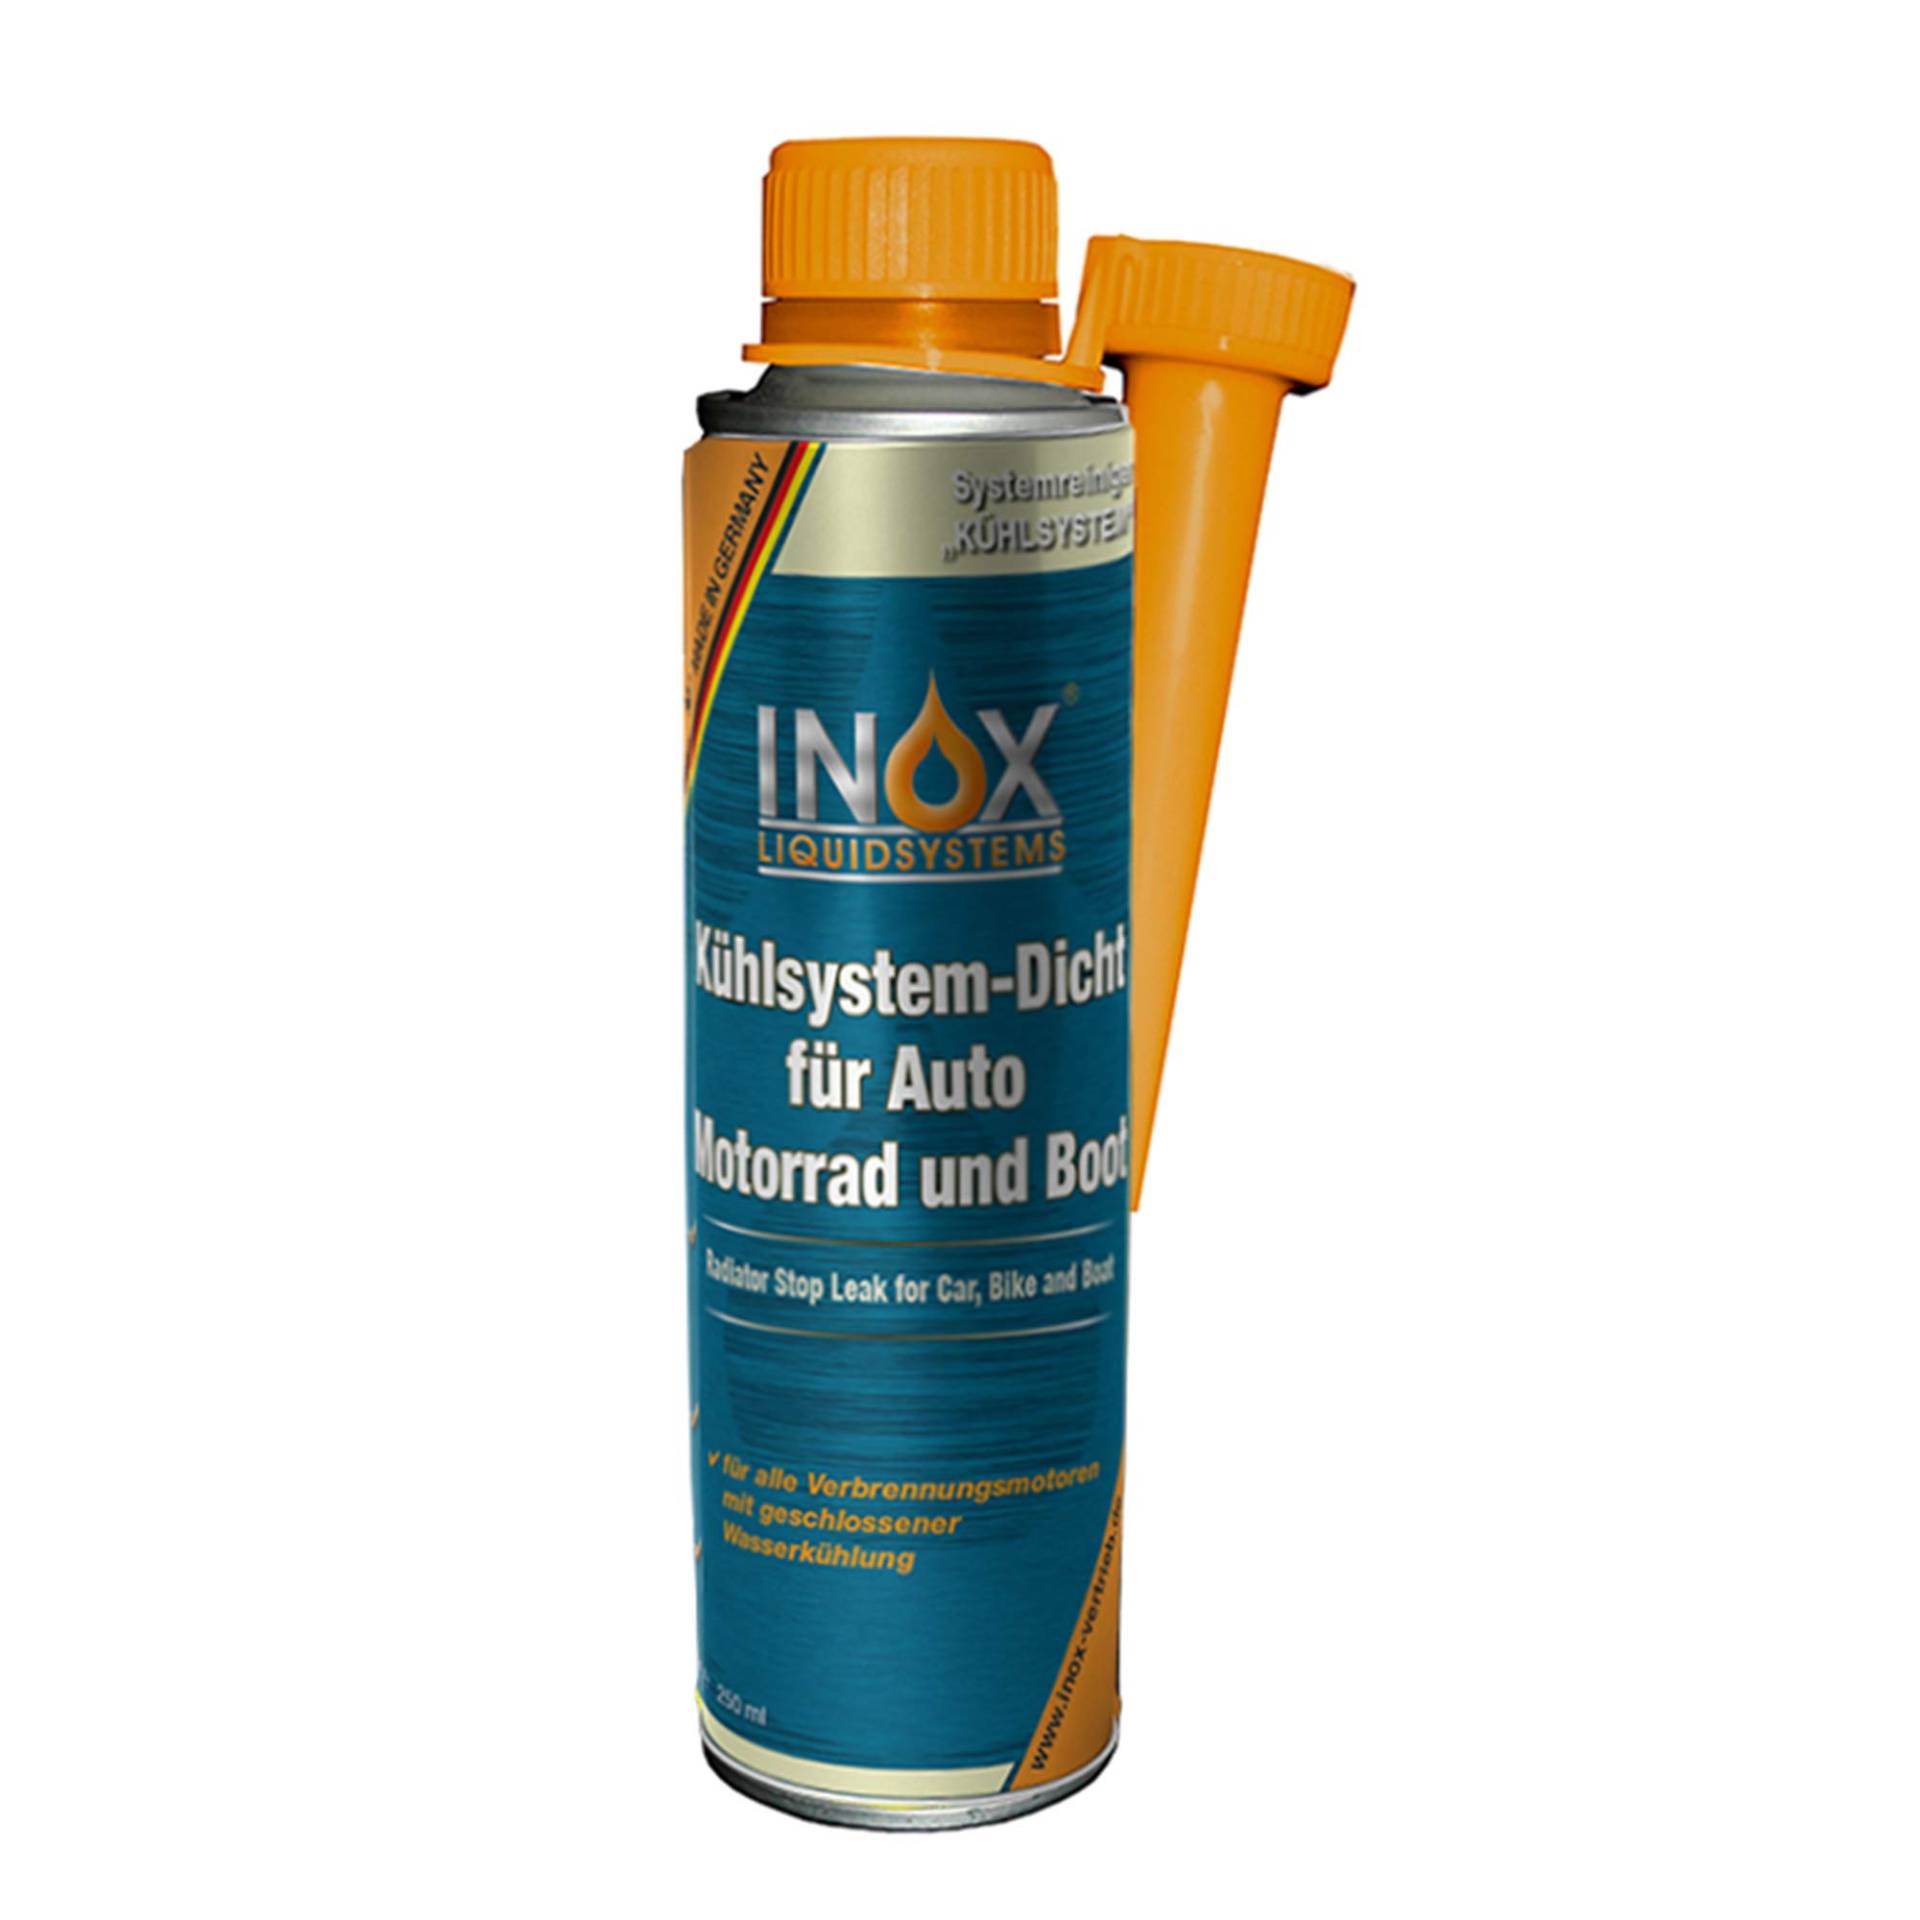 INOX® Kühlsystem Dicht Additiv Kühlsystempflege Aufbereitung, 250ml - Dichtmittel für Kühlsysteme für alle Verbrennungsmotoren mit Wasserkühlung geeignet (250ml) von INOX-LIQUIDSYSTEMS